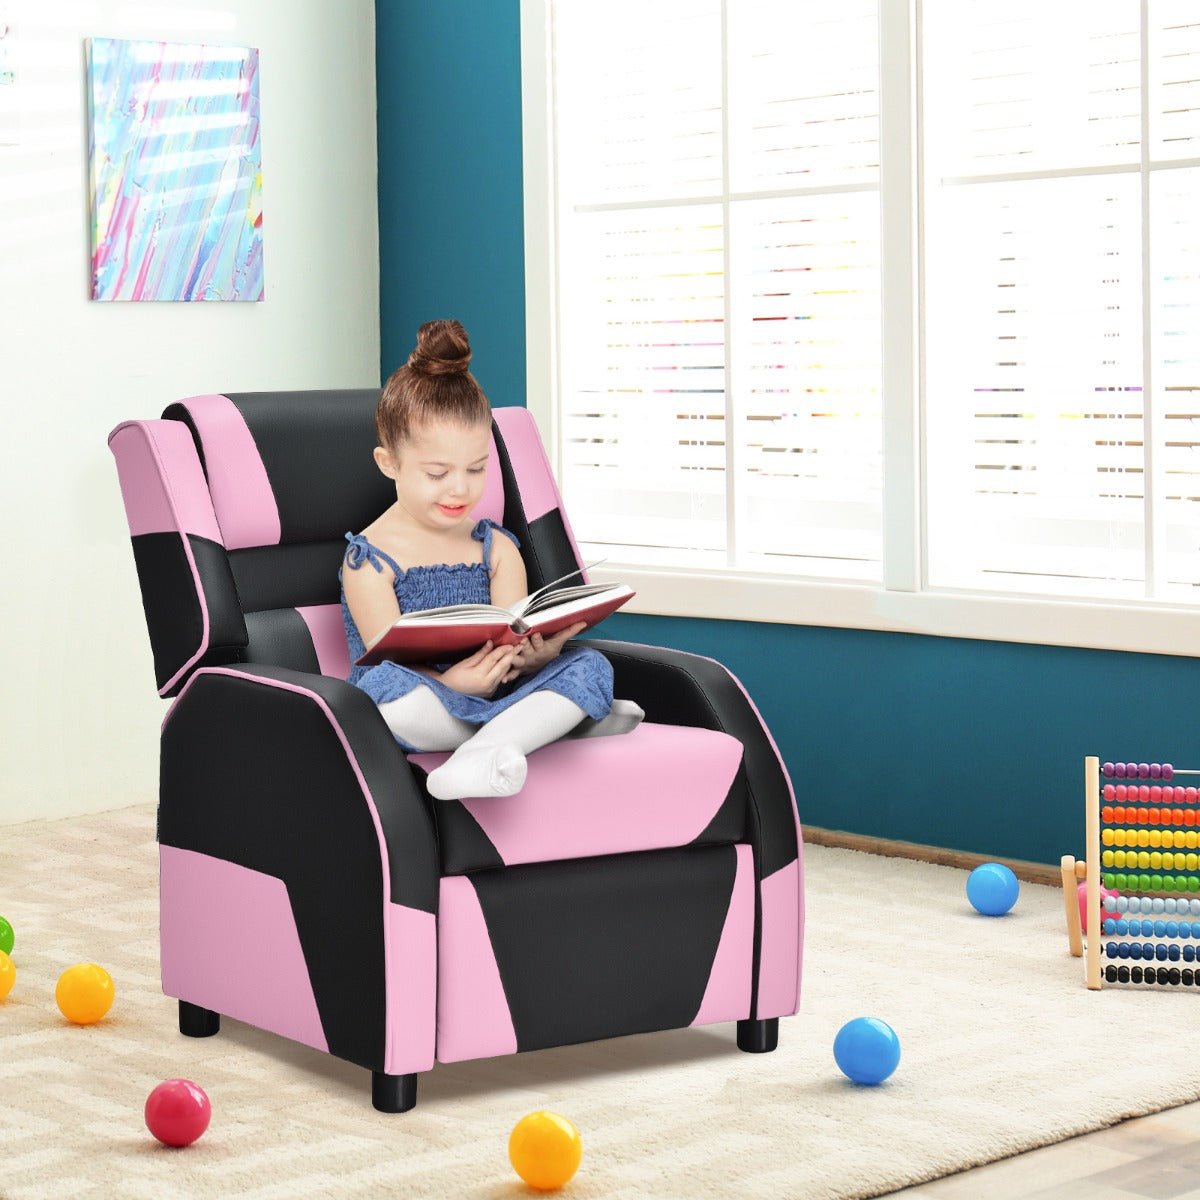 Kids Recliner Chair: Adjustable Backrest & Footrest - Pink